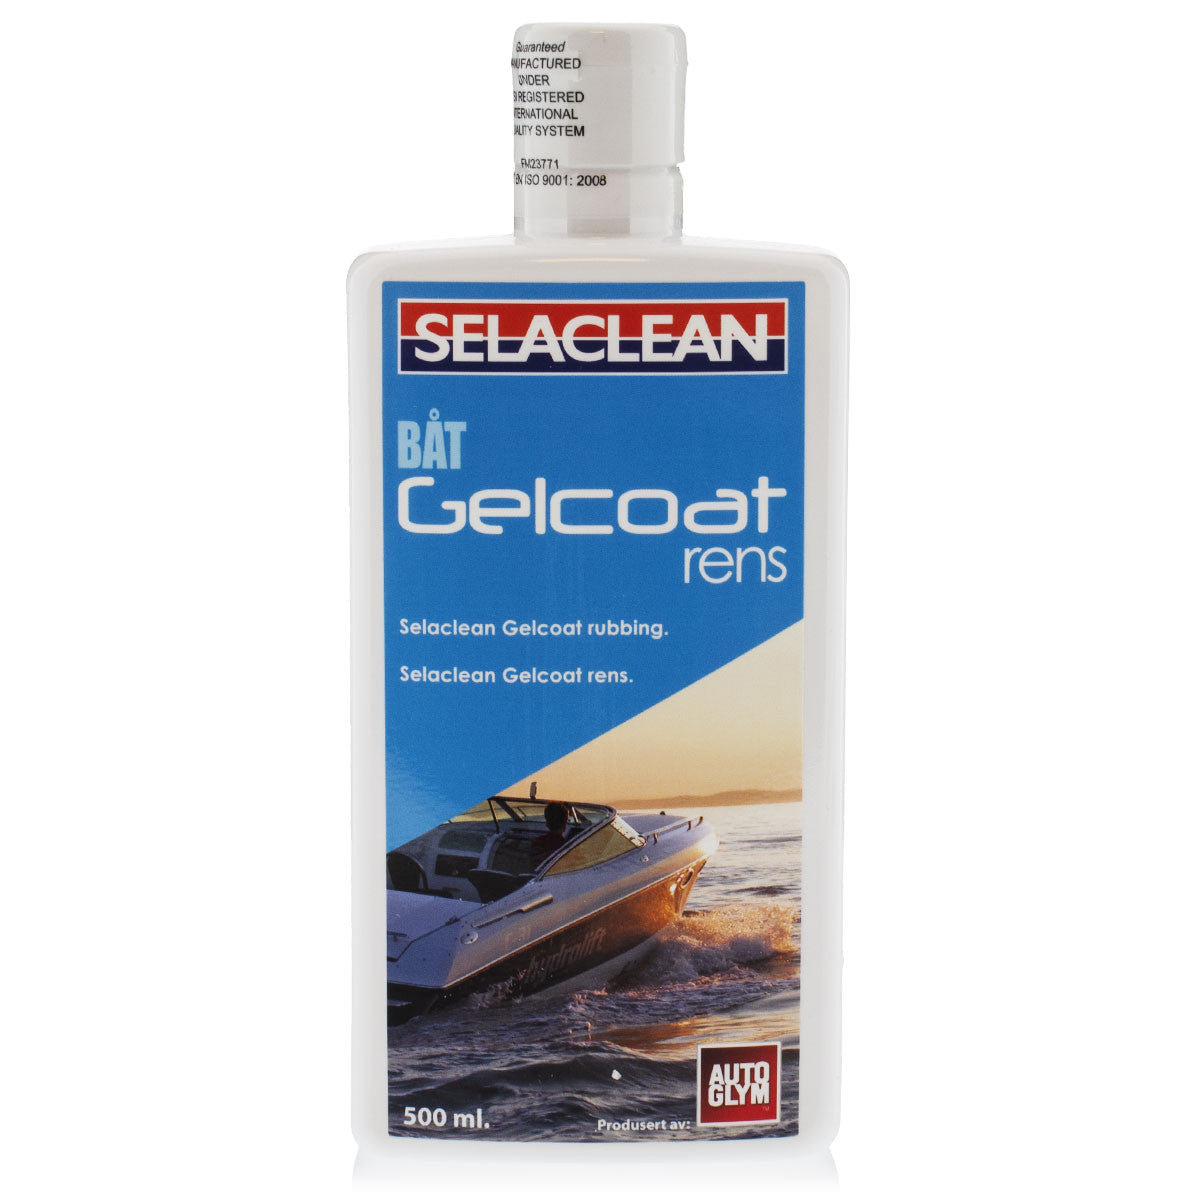 Selaclean Gelcoat Rens, 500 ml.